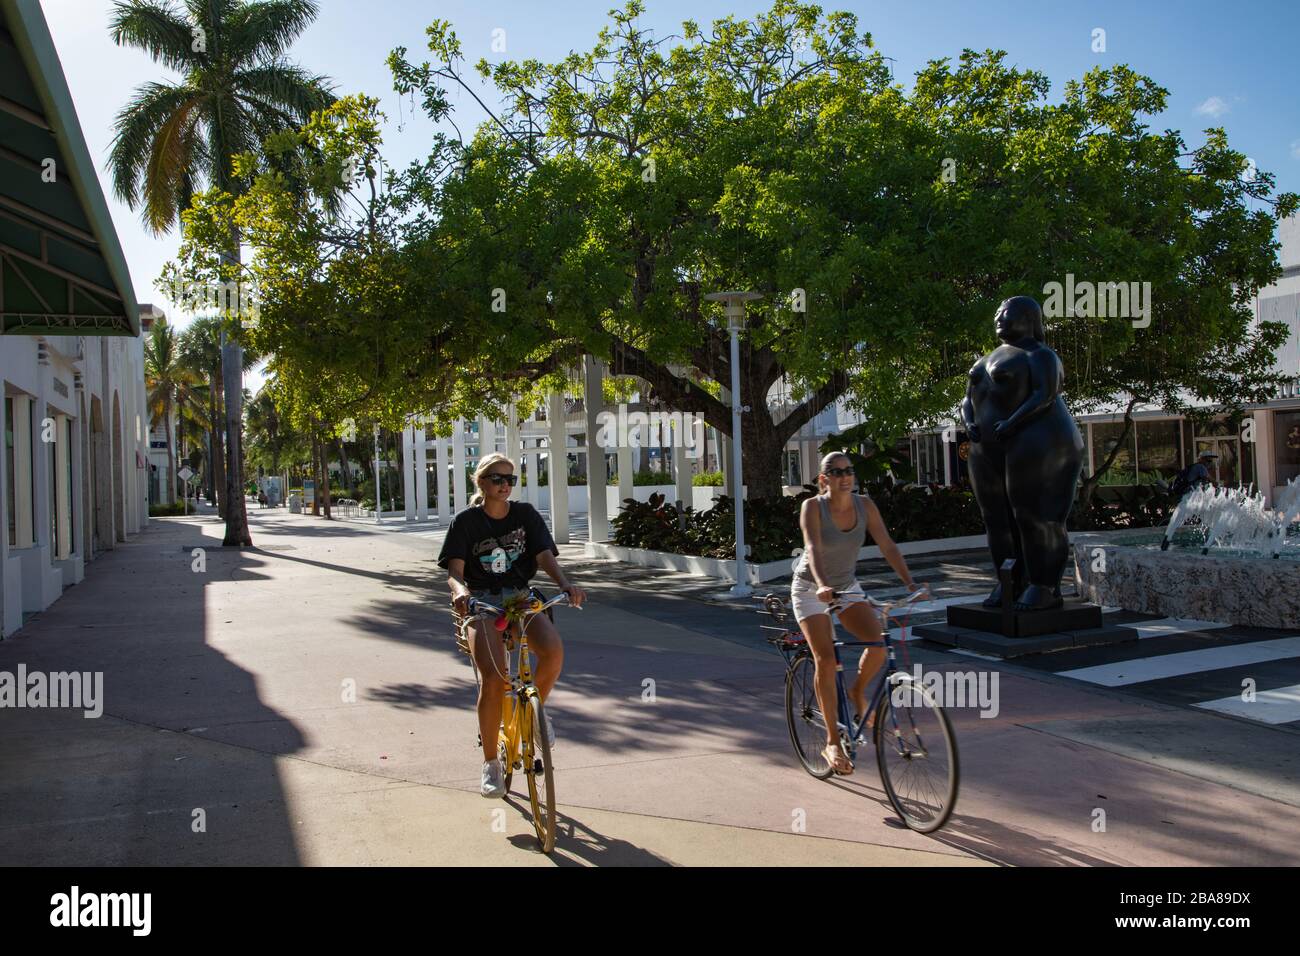 Miami Beach, Floride, États-Unis - 2020/03/23: Pratiquement vide Lincoln Road après la fermeture des affaires, des restaurants et des plages. Les cyclistes prennent la rue pour le loisir Banque D'Images